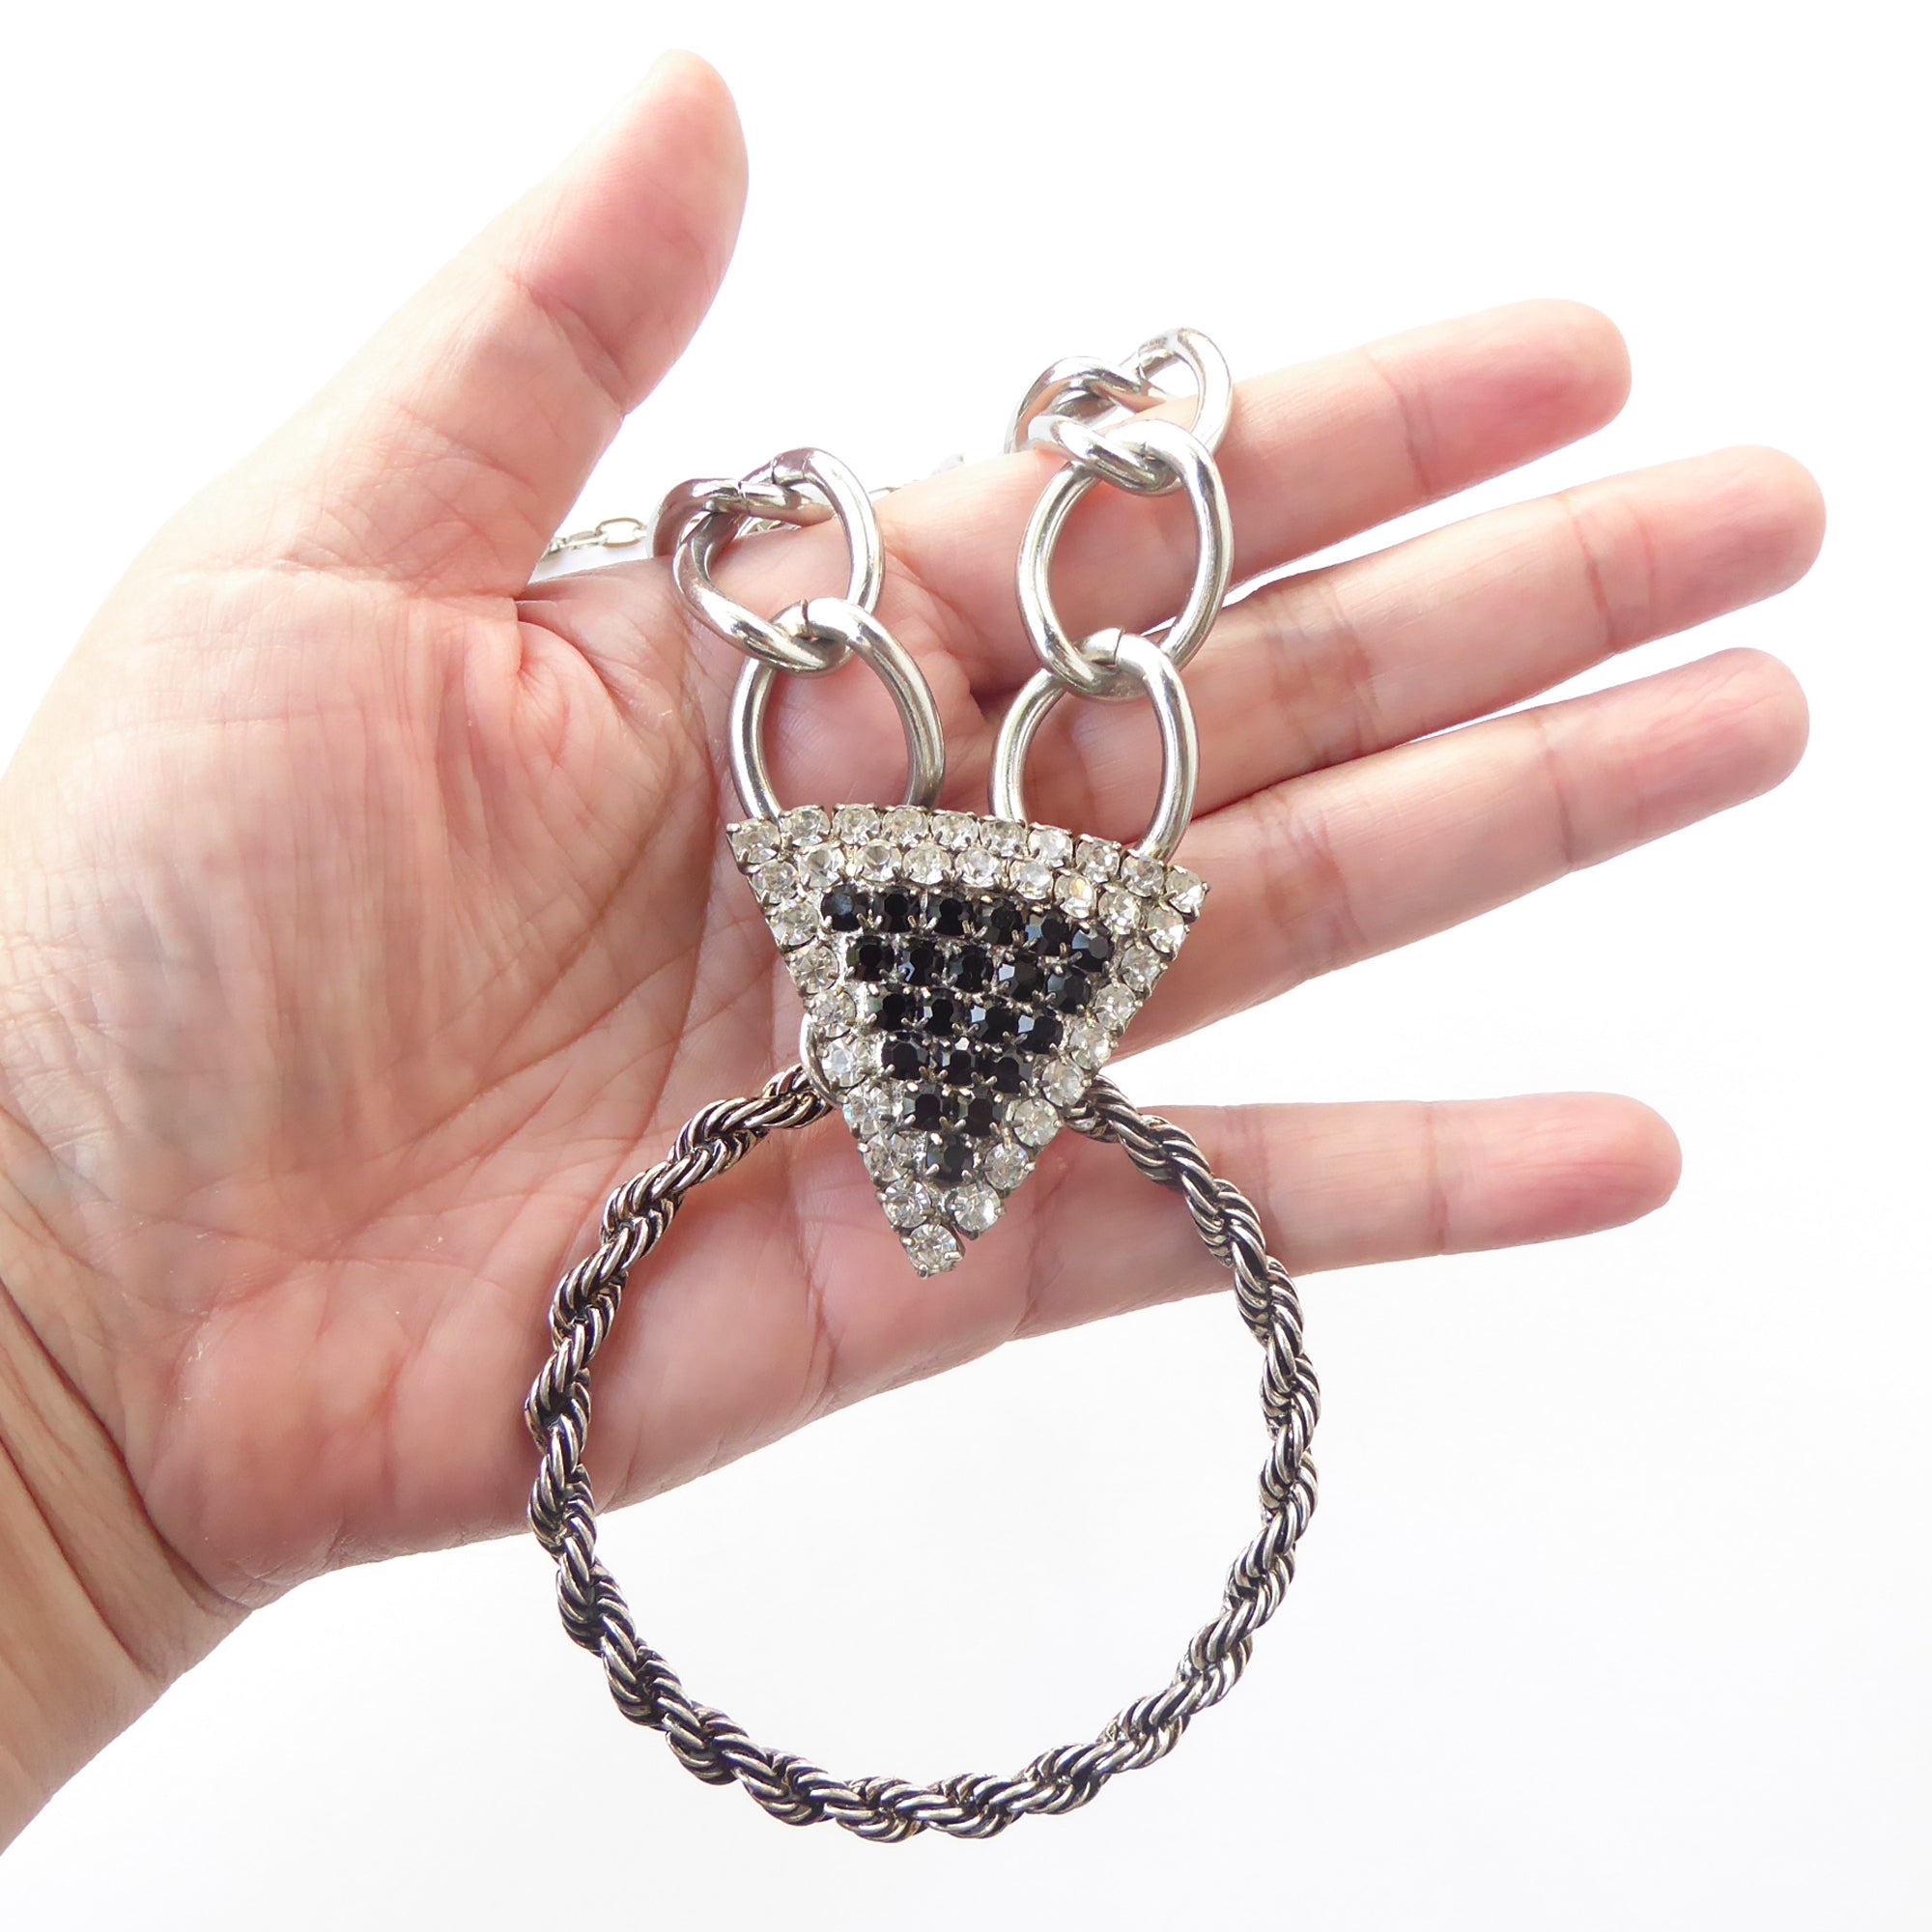 Rhinestone triangle necklace by Jenny Dayco 5